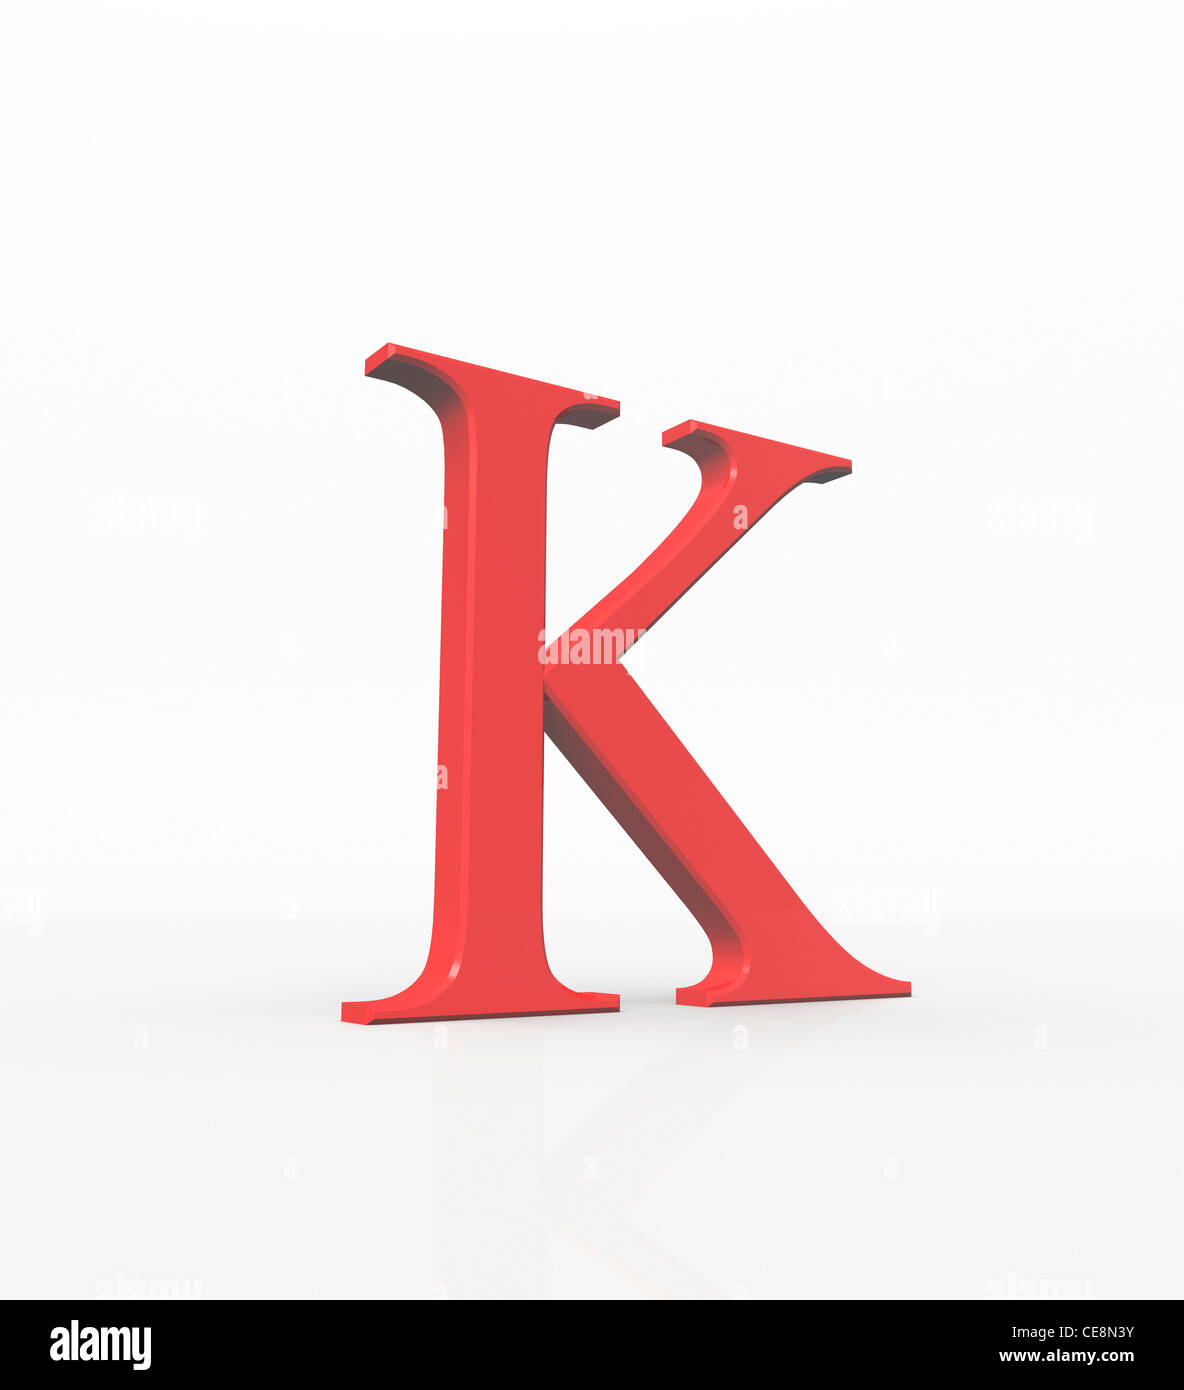 Kappa decimo lettera alfabeto greco nel sistema di numeri di greco il valore it 20 lettera minuscola comunemente utilizzato nella geometria matematica Foto Stock